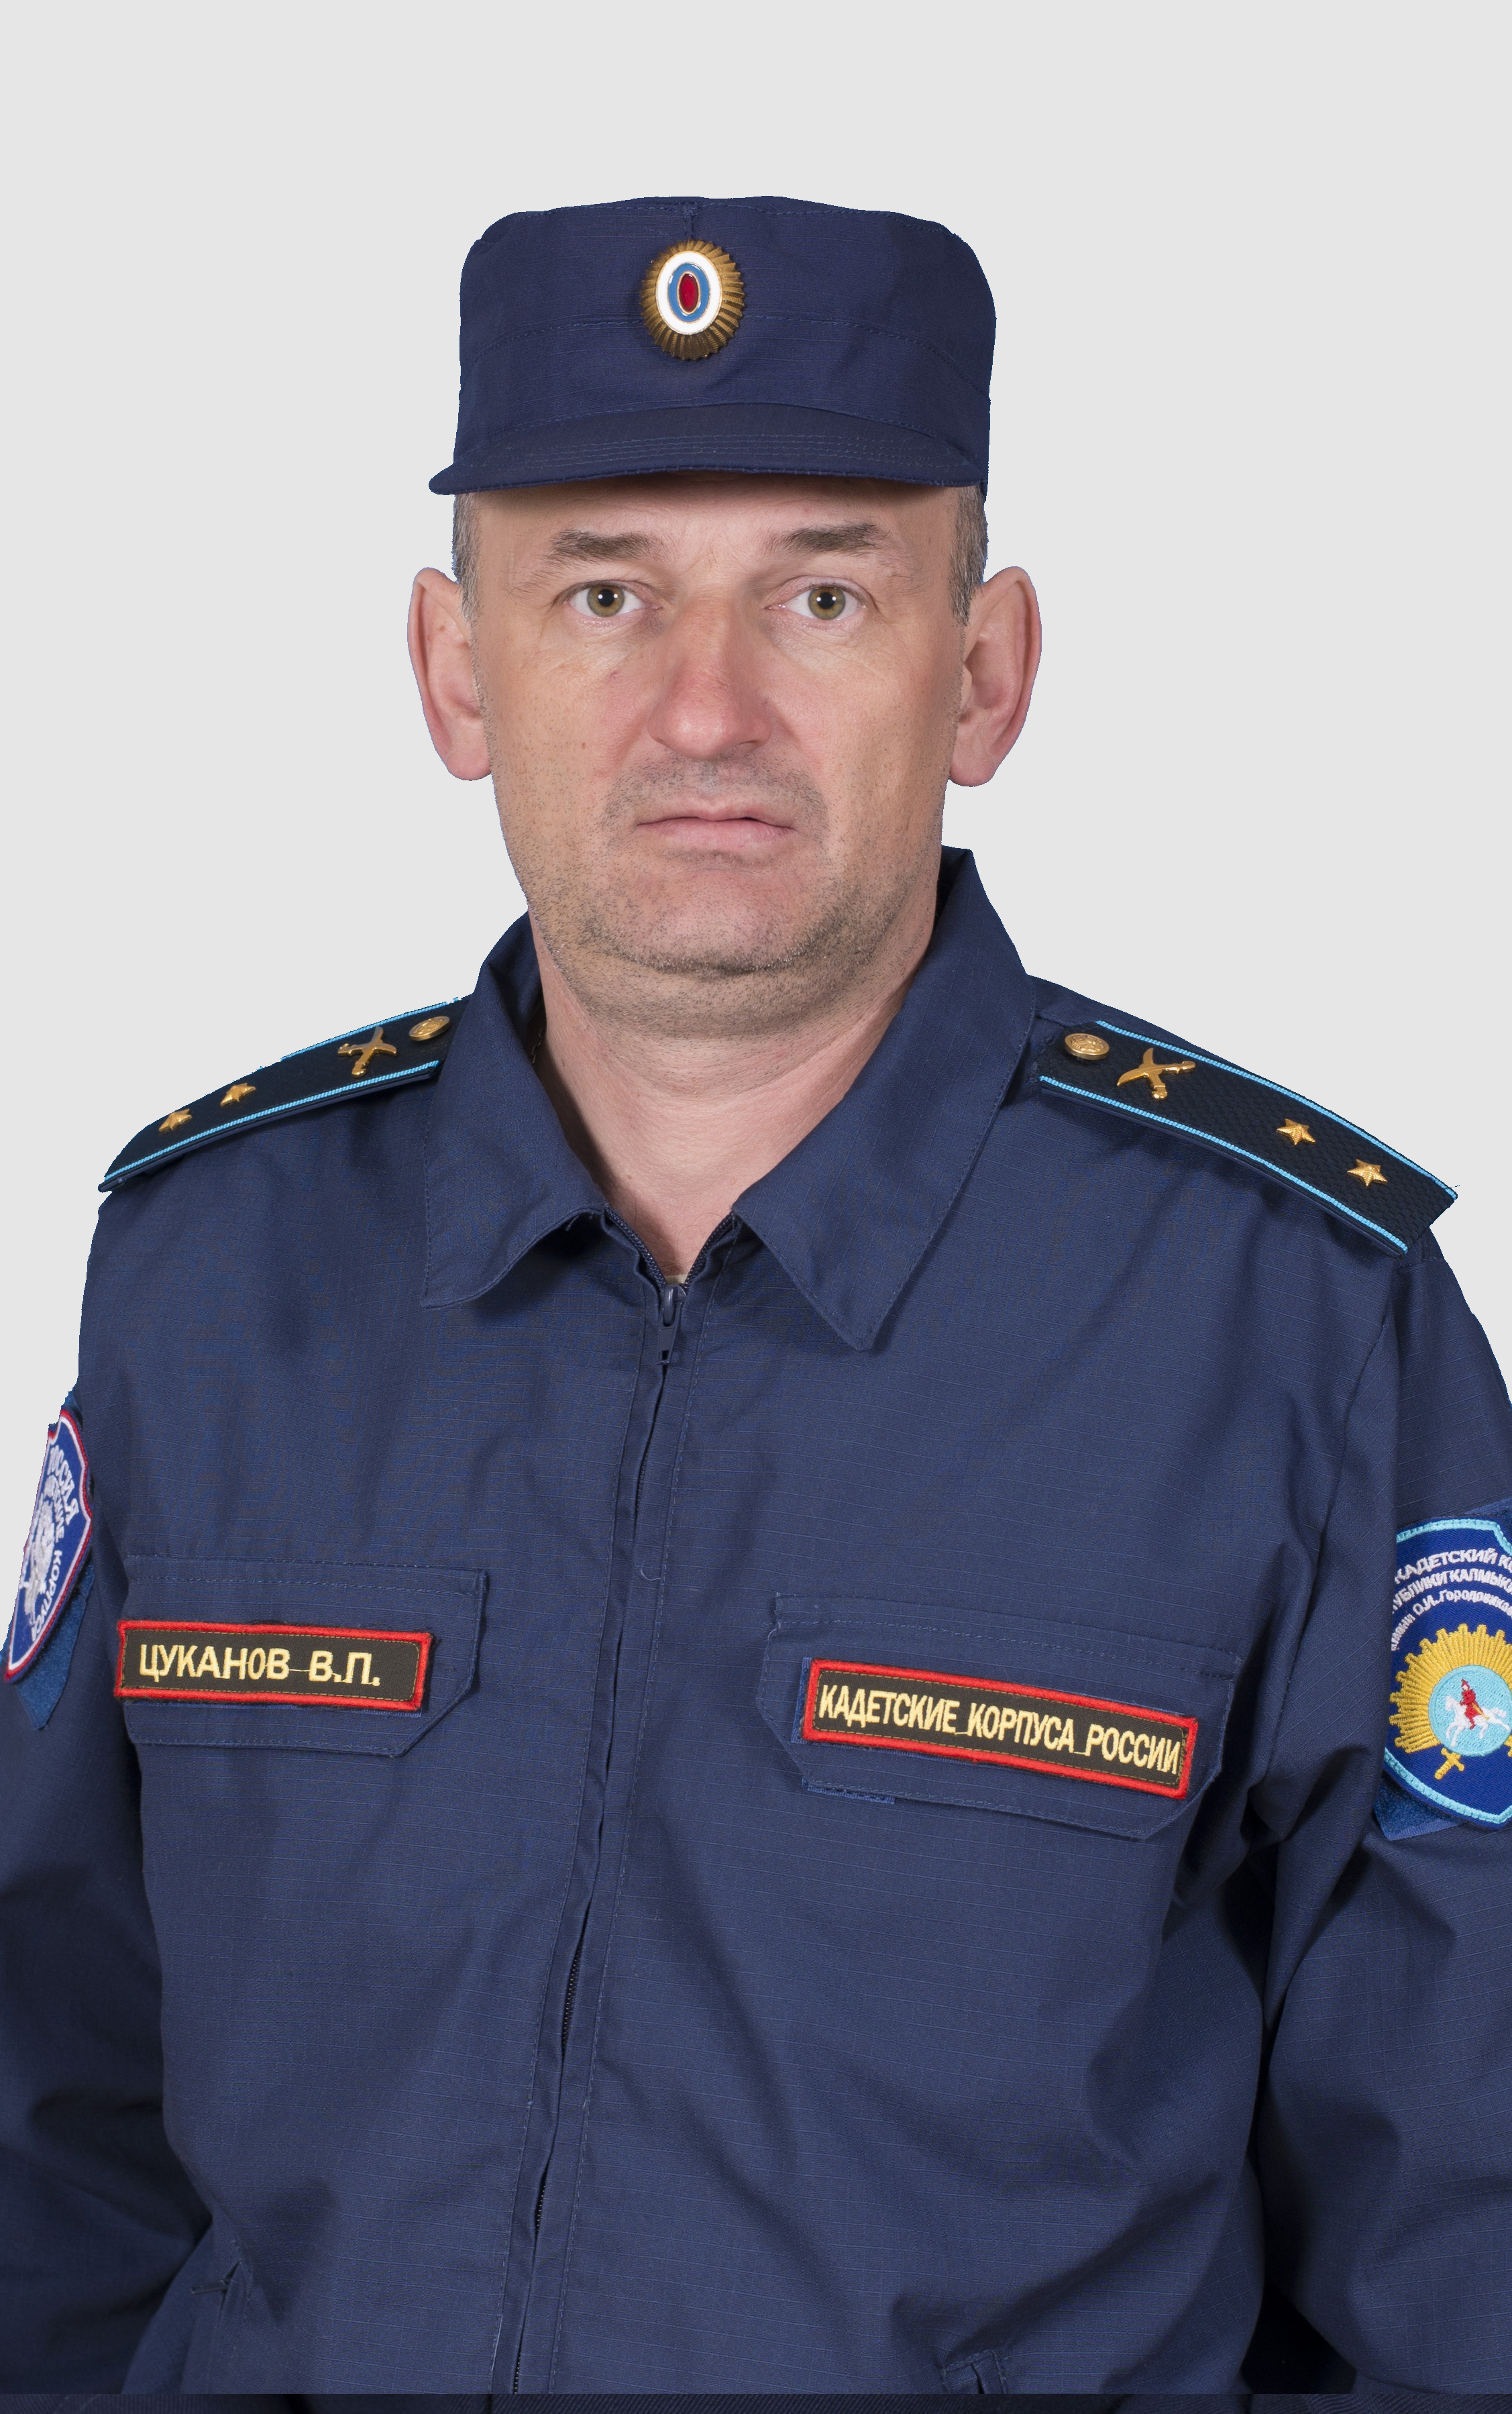 Цуканов Владимир Павлович.